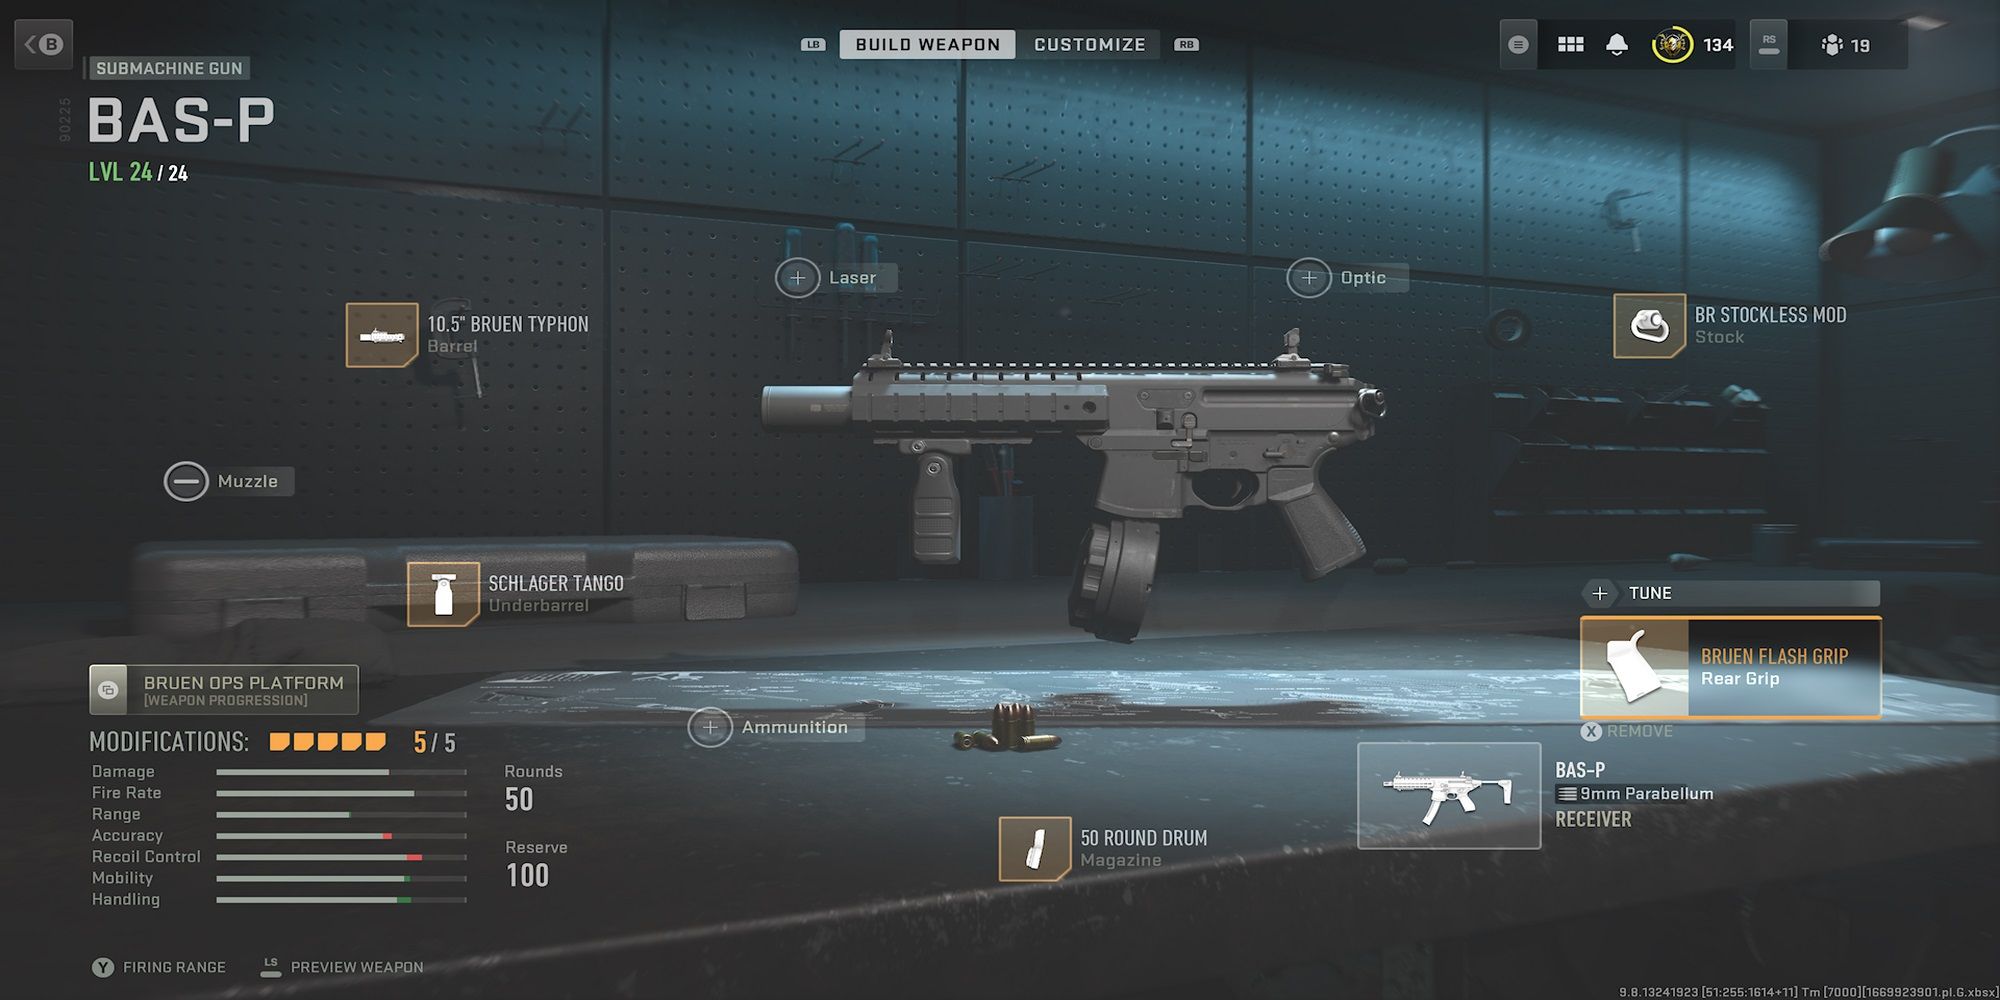 Customized BAS-P SMG in Modern Warfare 2 Gunsmith Customization